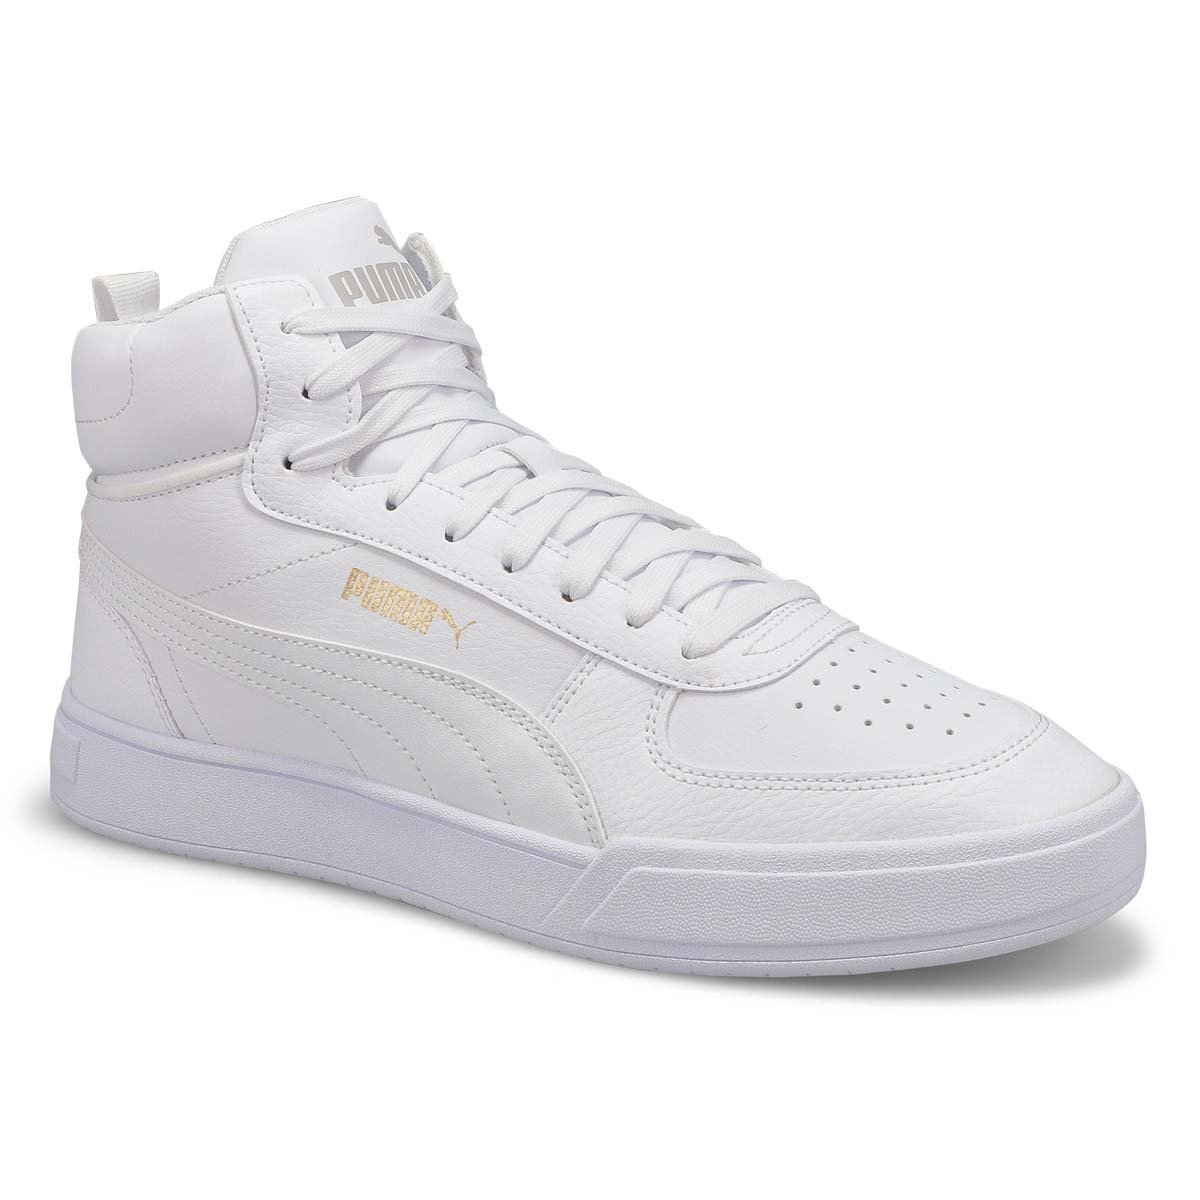 Puma Men's Caven Mid Sneaker - White/Gold/Gre | SoftMoc.com